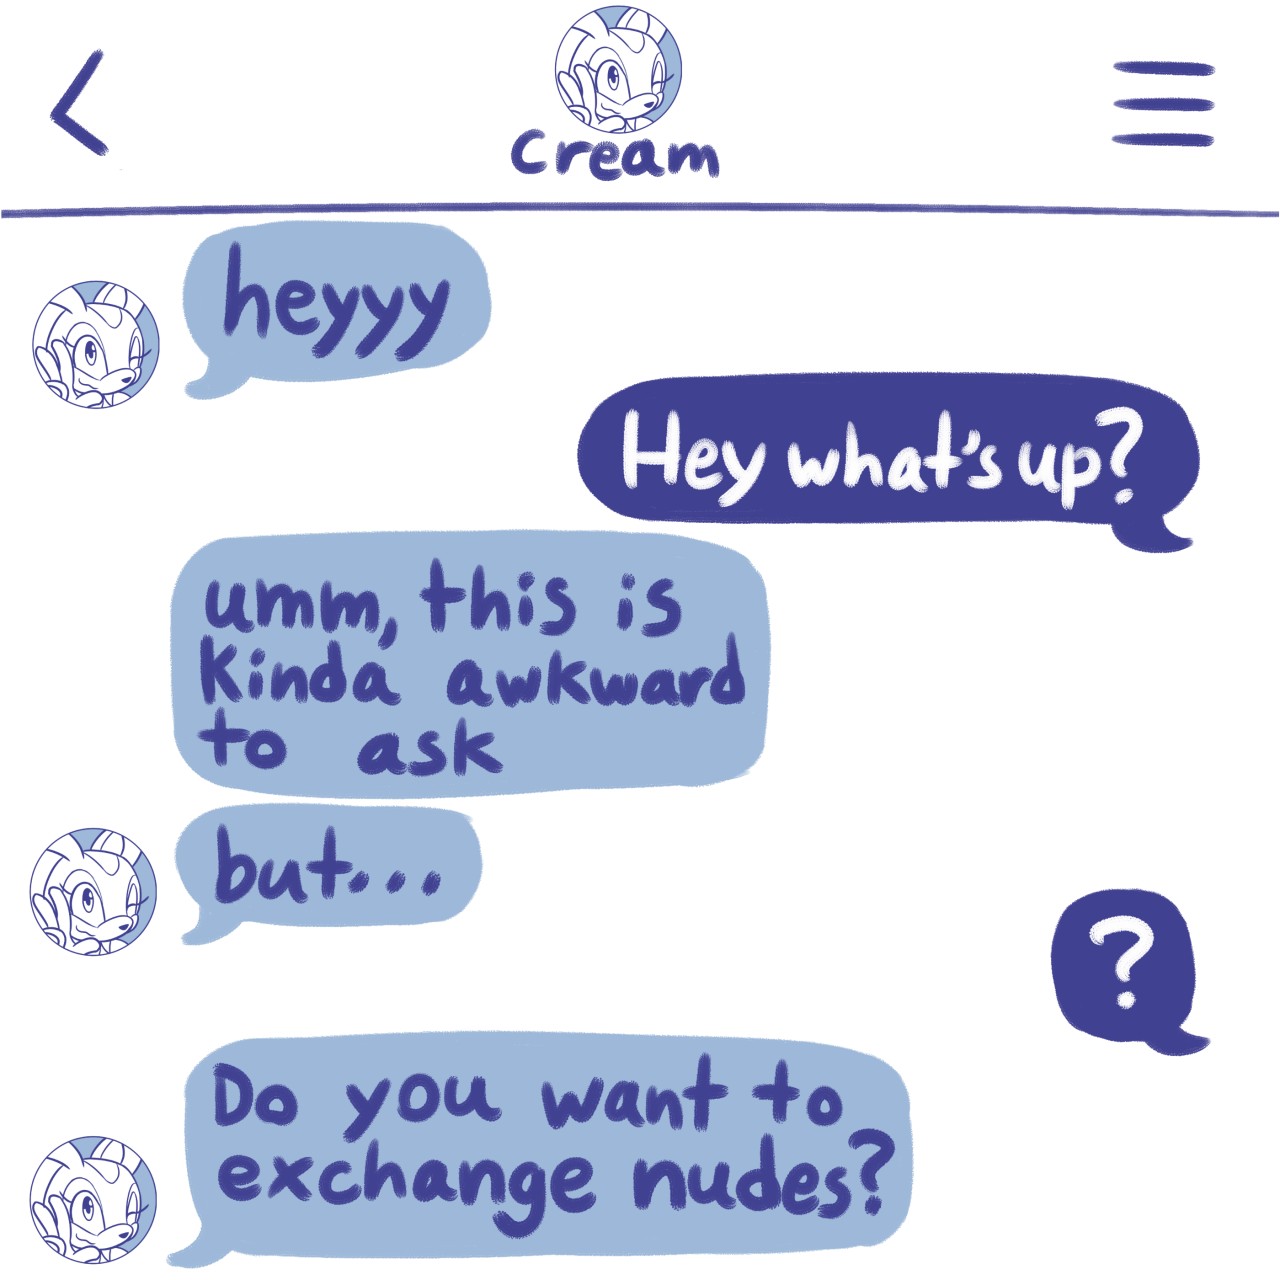 Sexting Cream 03